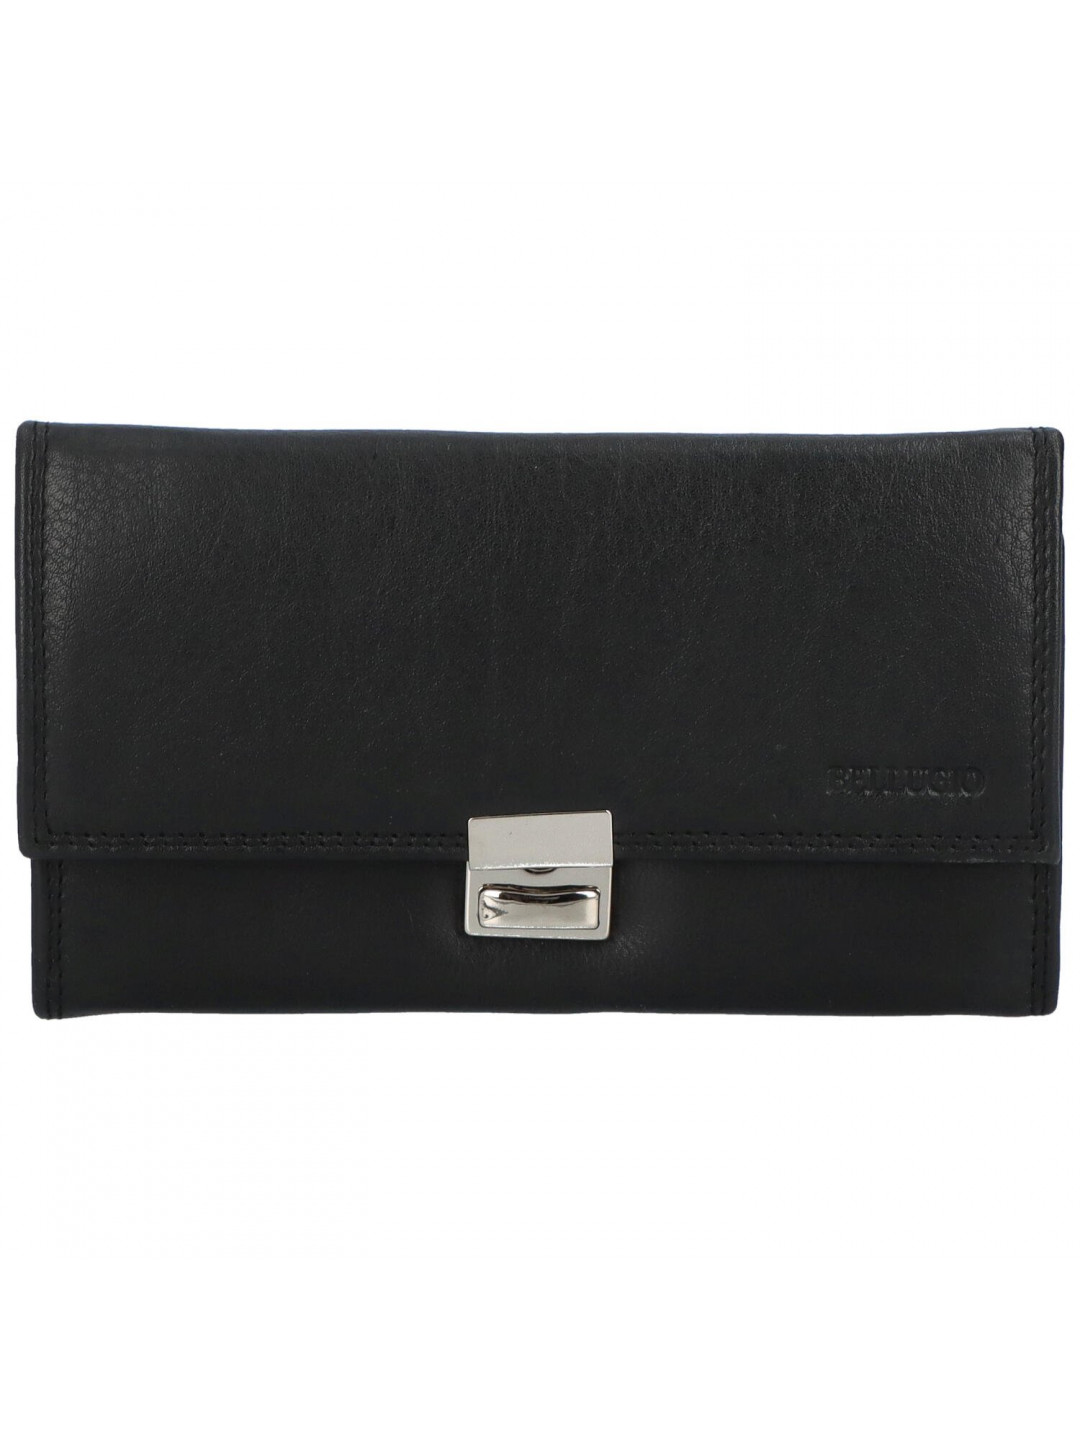 Luxusní dámská kožená peněženka Efip černá